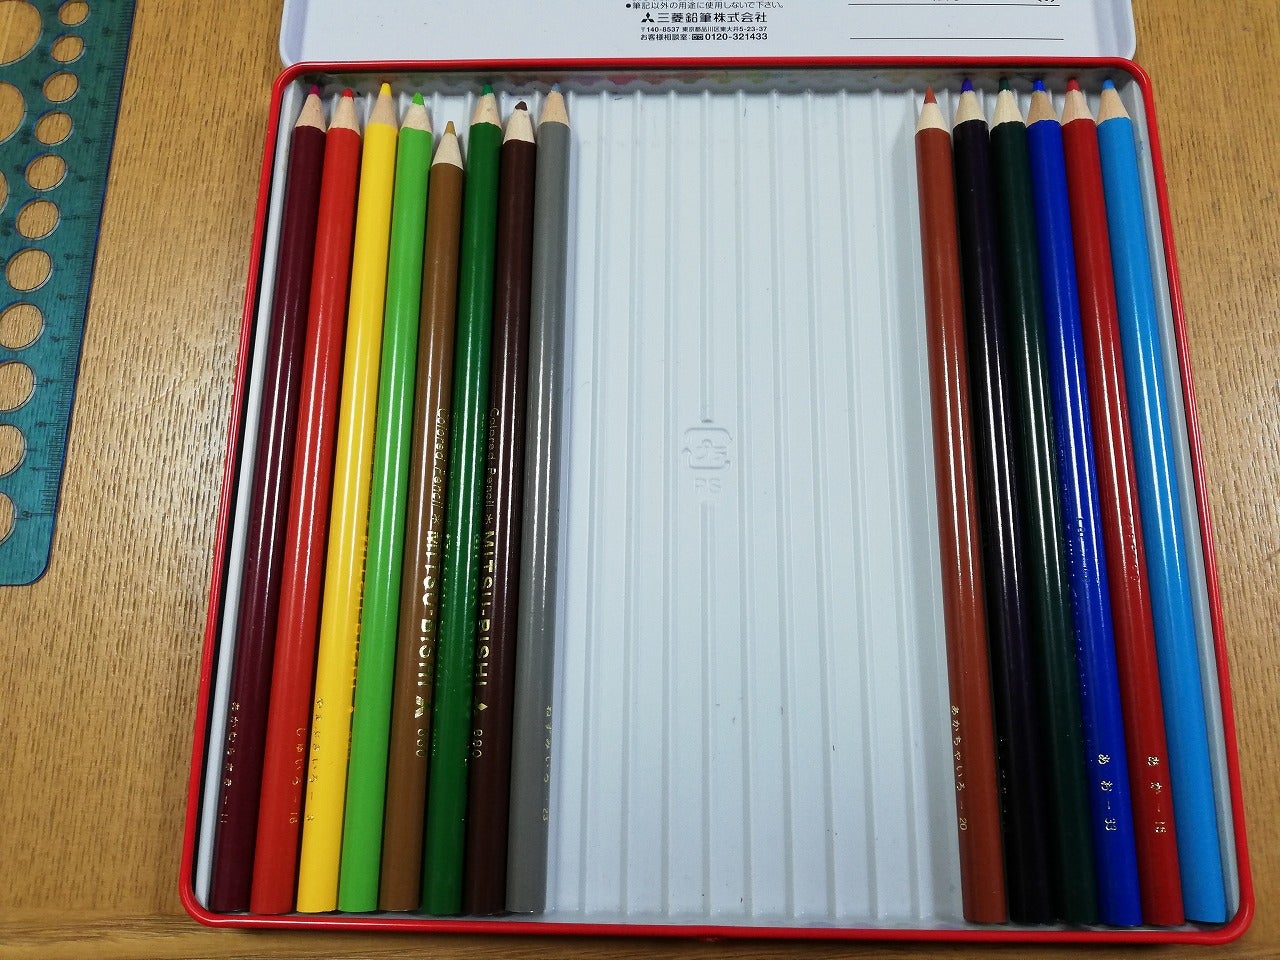 色鉛筆について【インテリアコーディネーター 二次試験】 | インテリアコーディネーター資格試験 合格体験記